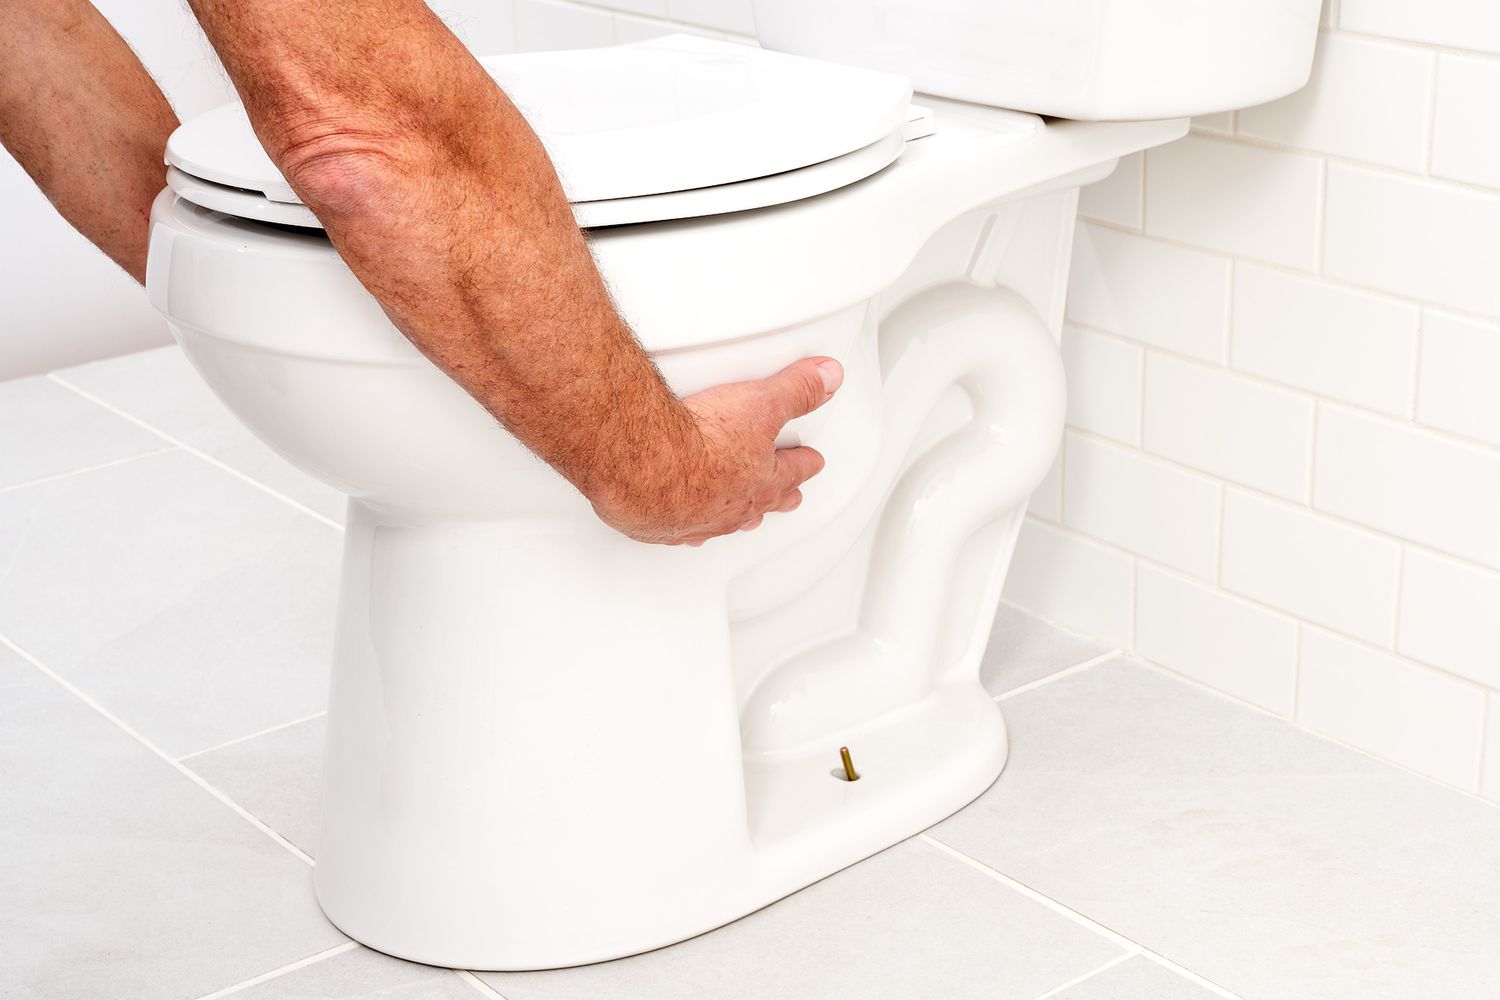 Toilette vom Boden abheben, während man jede Seite der Schüssel festhält